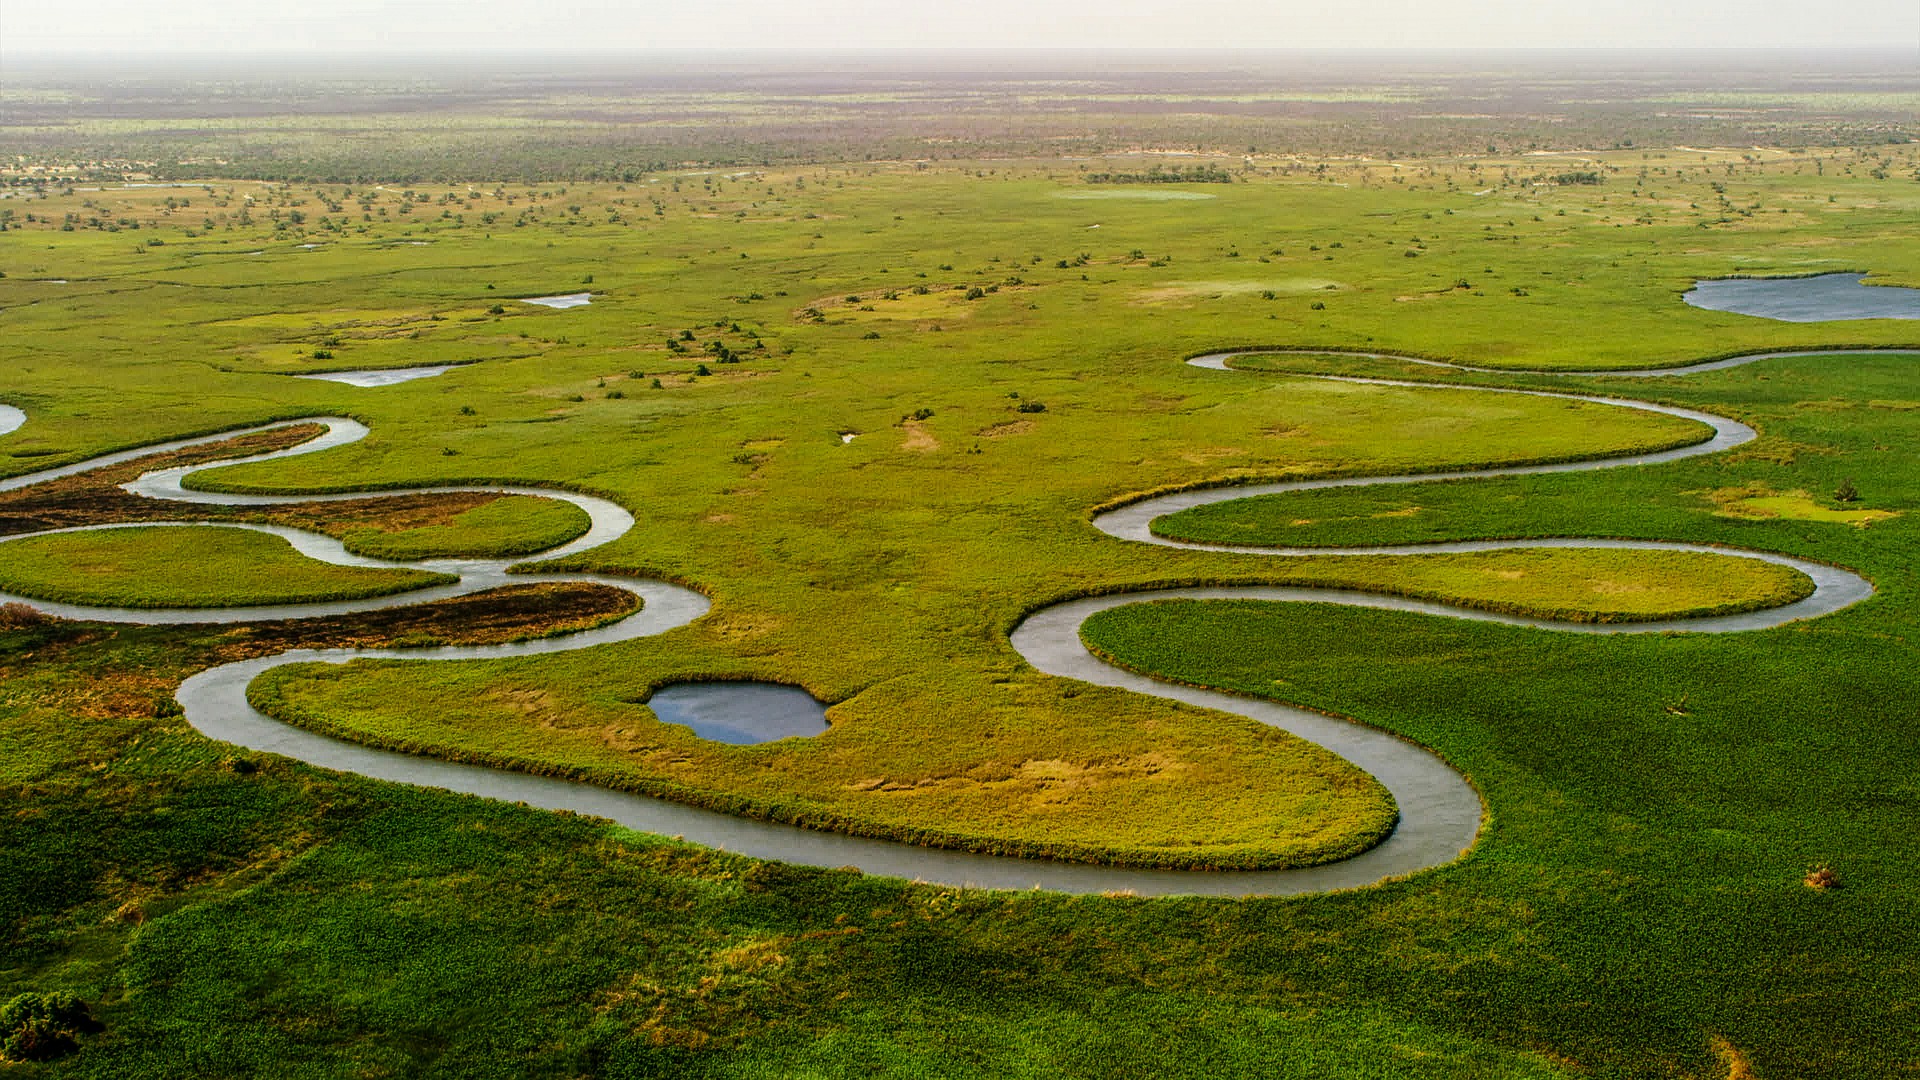 Das Okavango Delta aus der Vogelperspektive. Man sieht grüne Wiesen und vereinzelt niedrige Büsche. Im Vordergrund schlängelt sich ein Fluss durch die Landschaft.